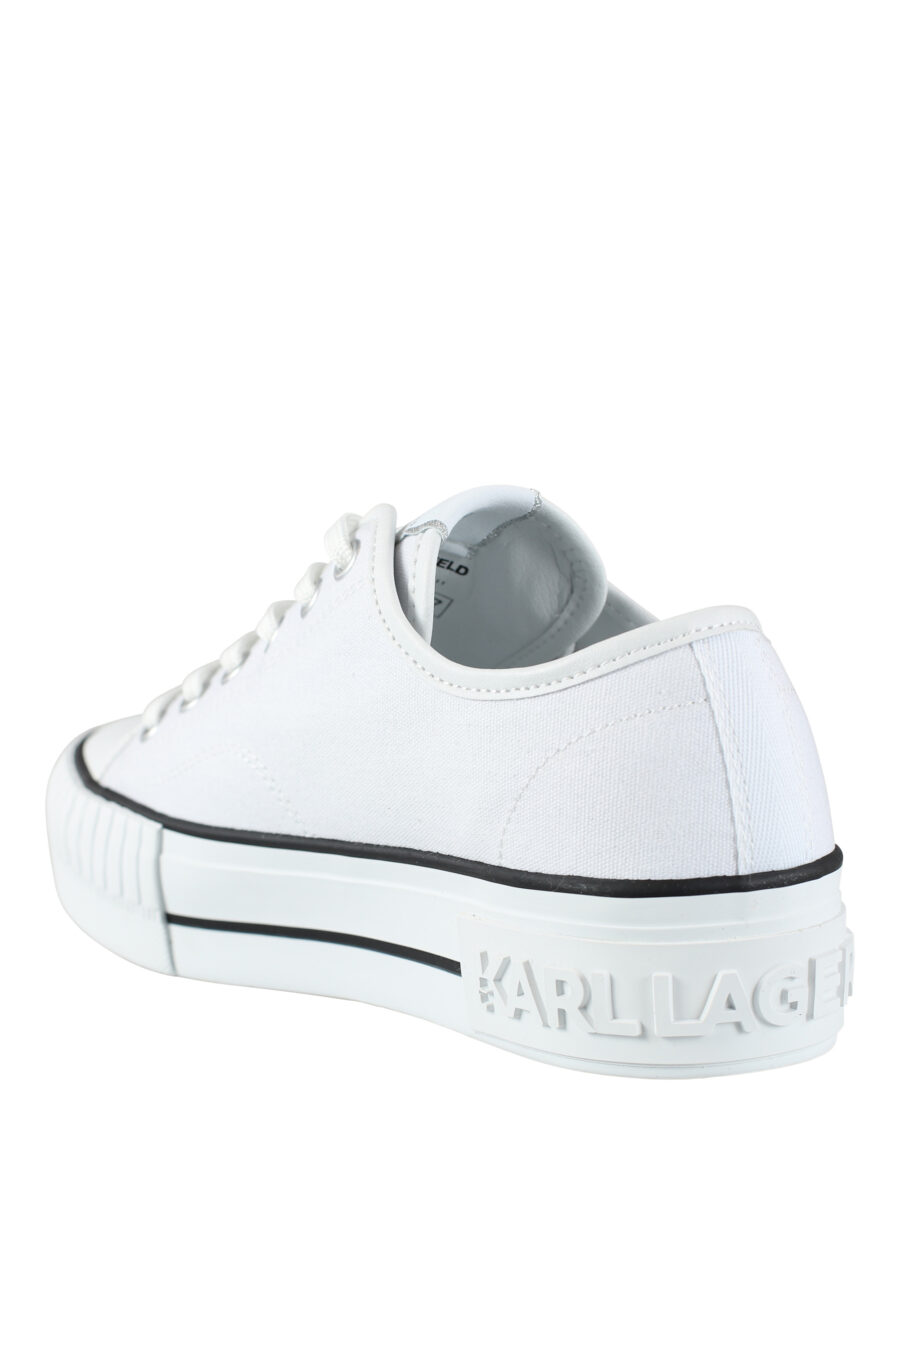 Zapatillas blancas estilo converse con logo "karl" en goma - IMG 9564